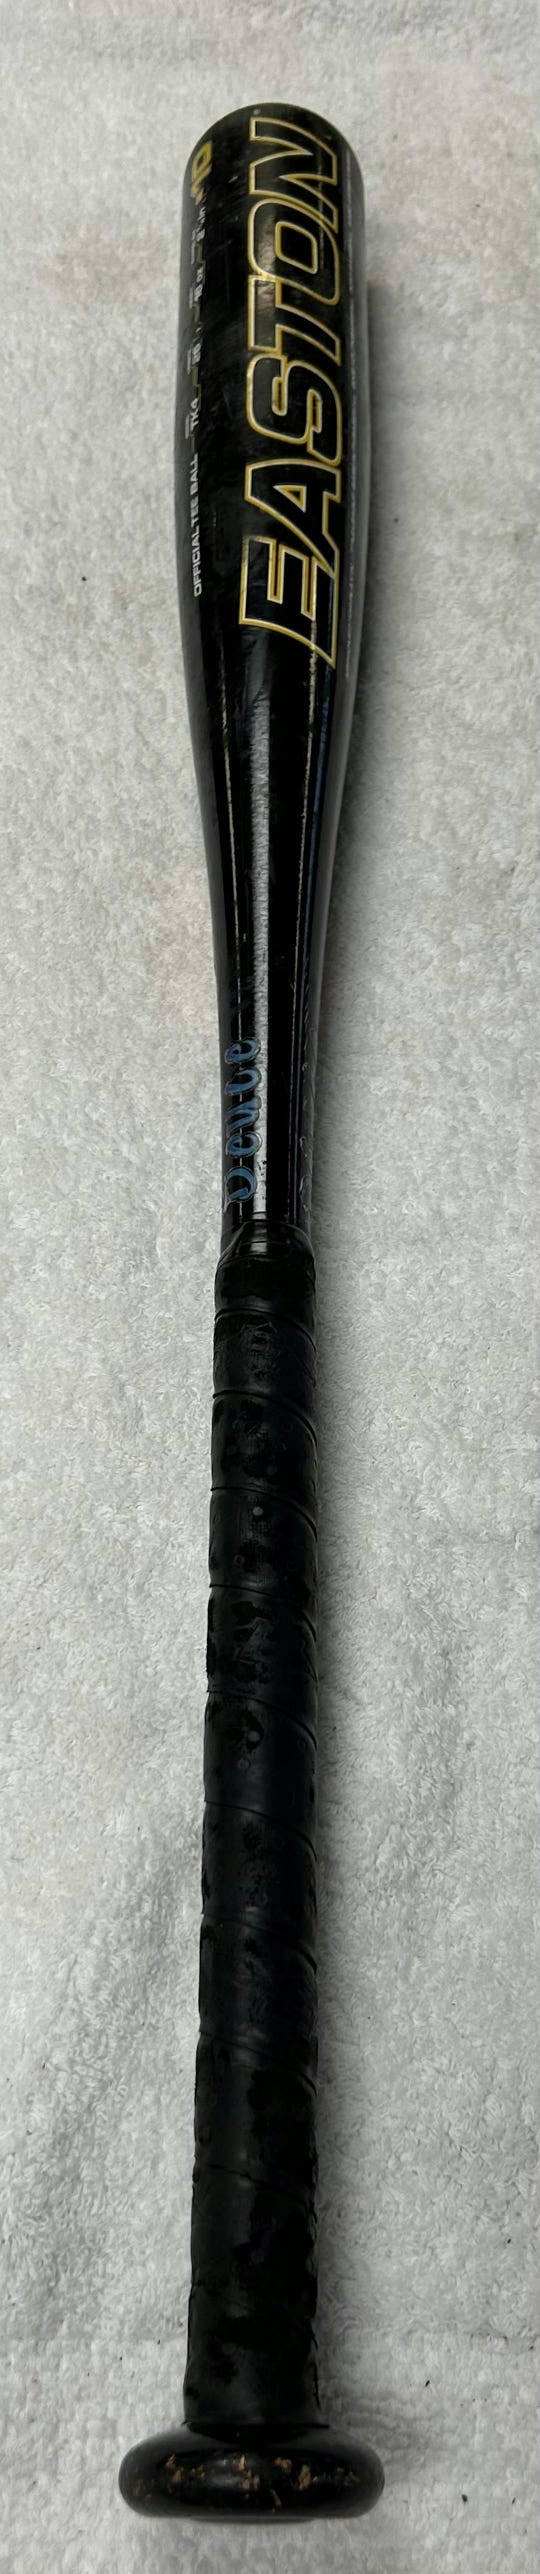 Used Easton Hammer Tk4 26" -10 Drop Tee Ball Bats